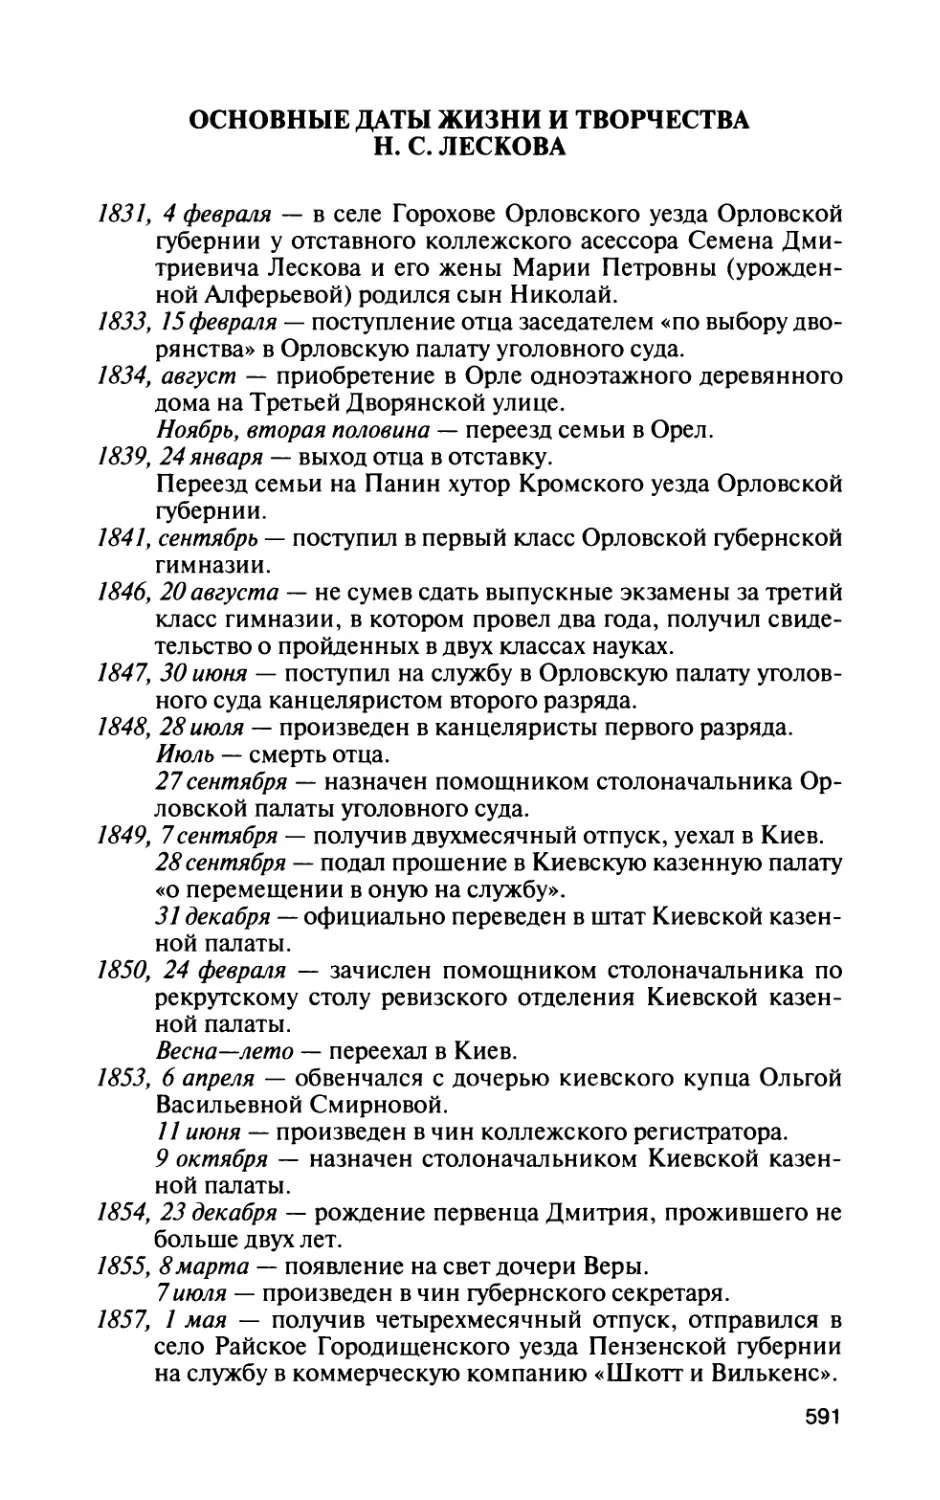 Основные даты жизни и творчества Н. С. Лескова